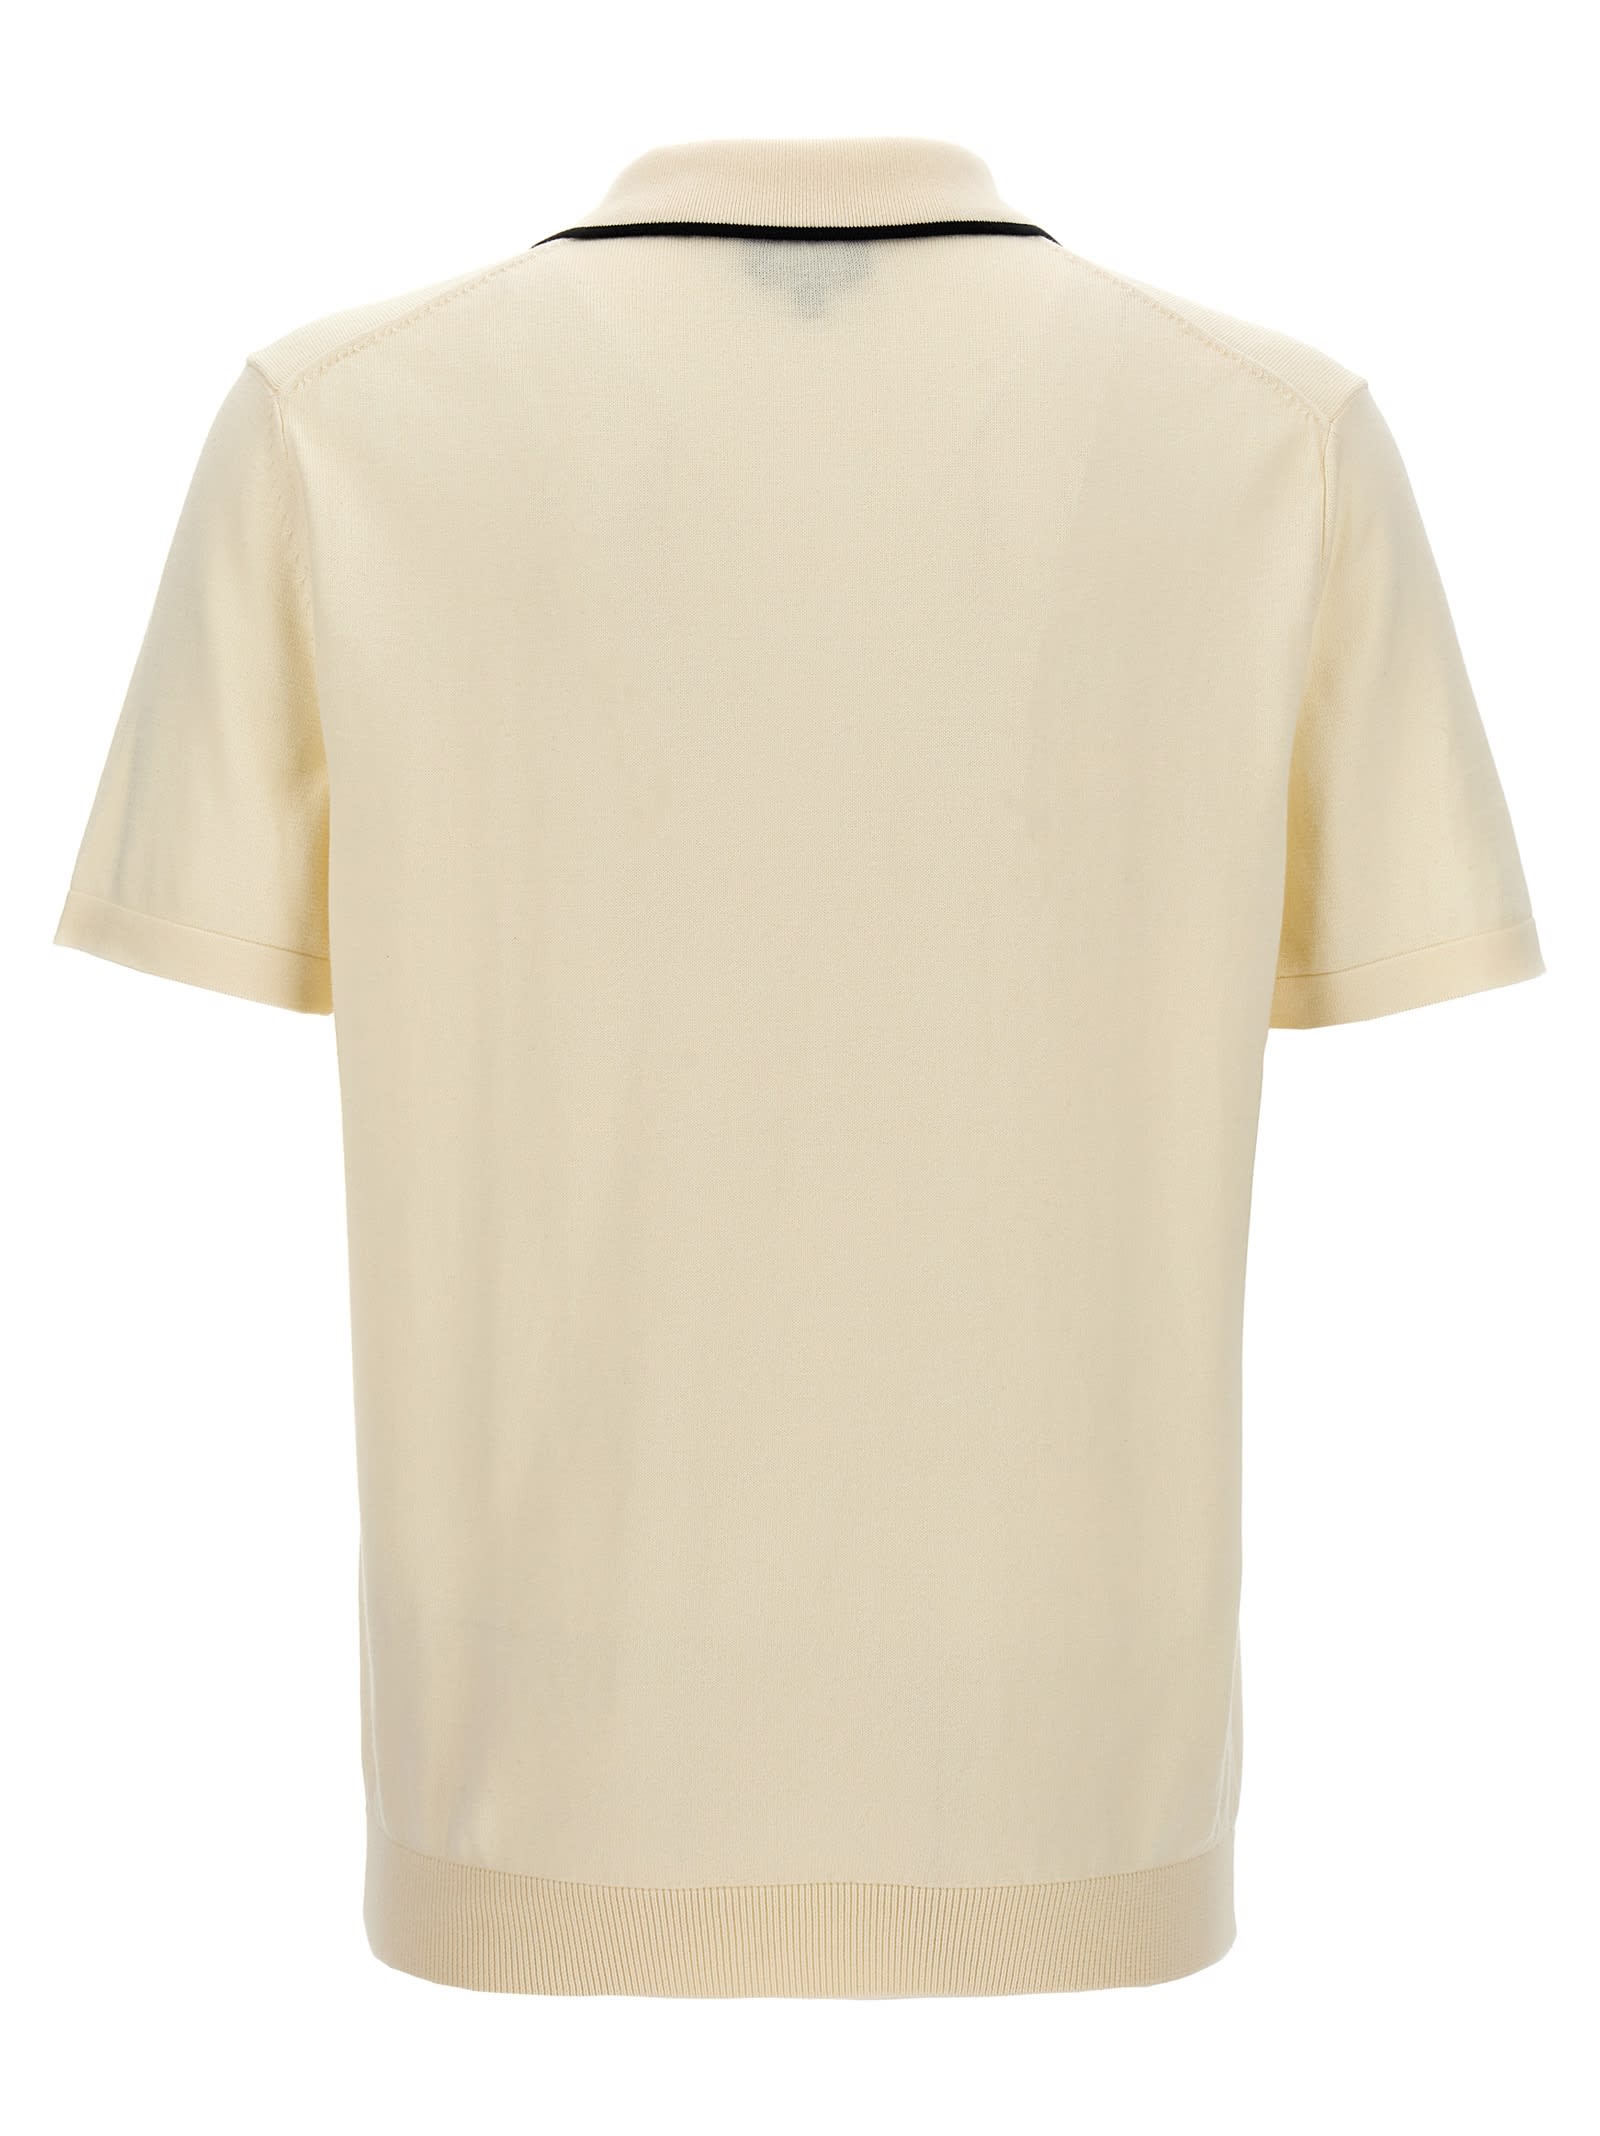 Shop Apc Flynn Polo Shirt In Blanc Casse Noir